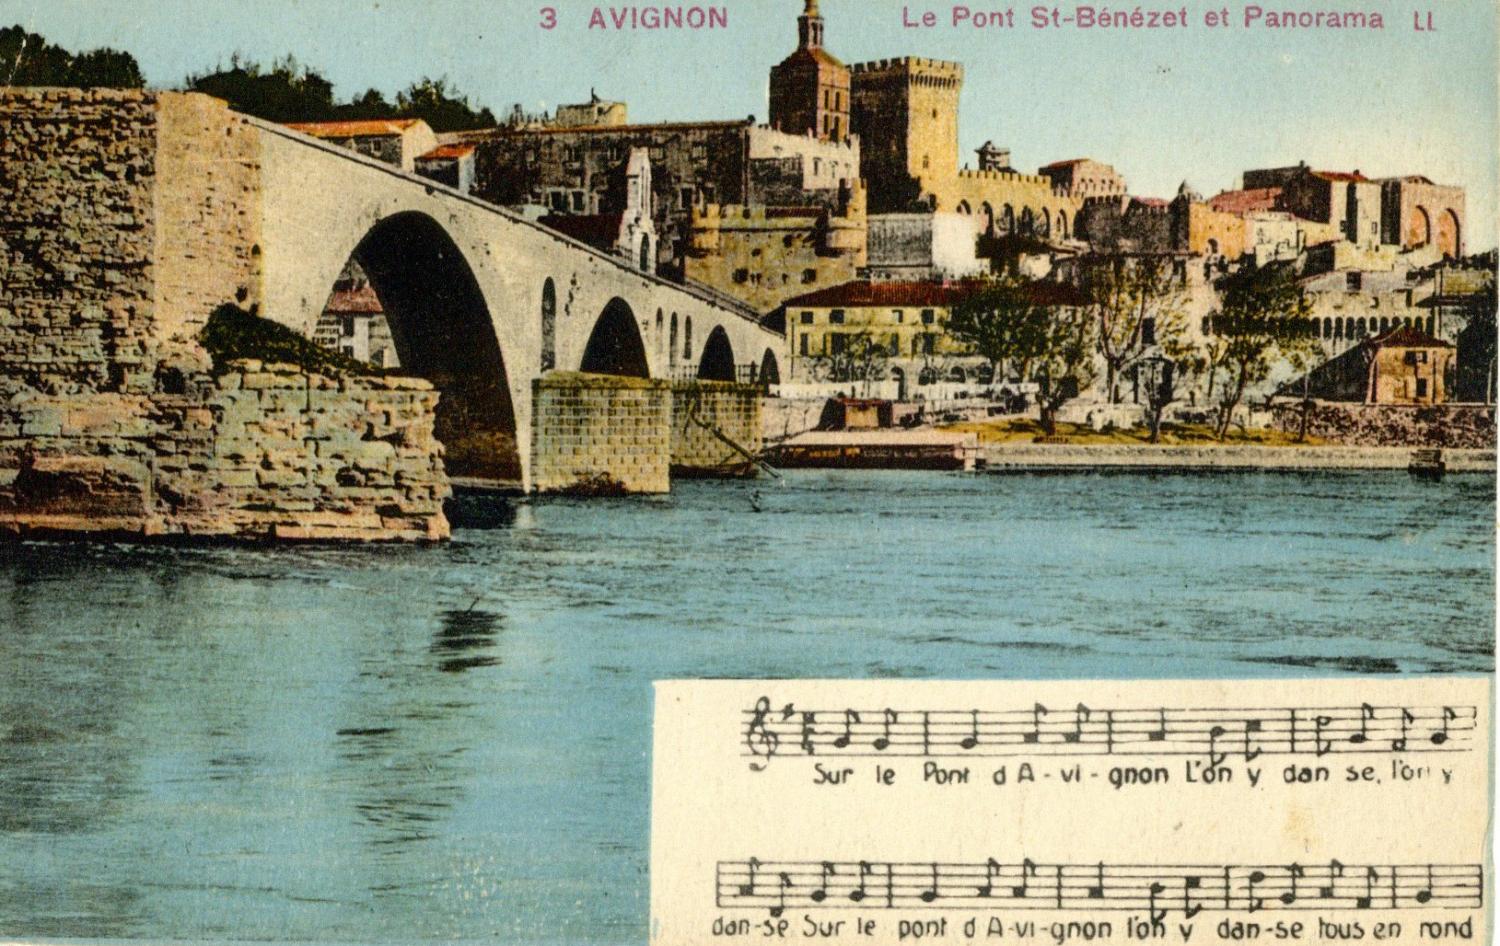 Avignon - Le Pont St-Bénézet et Panorama.